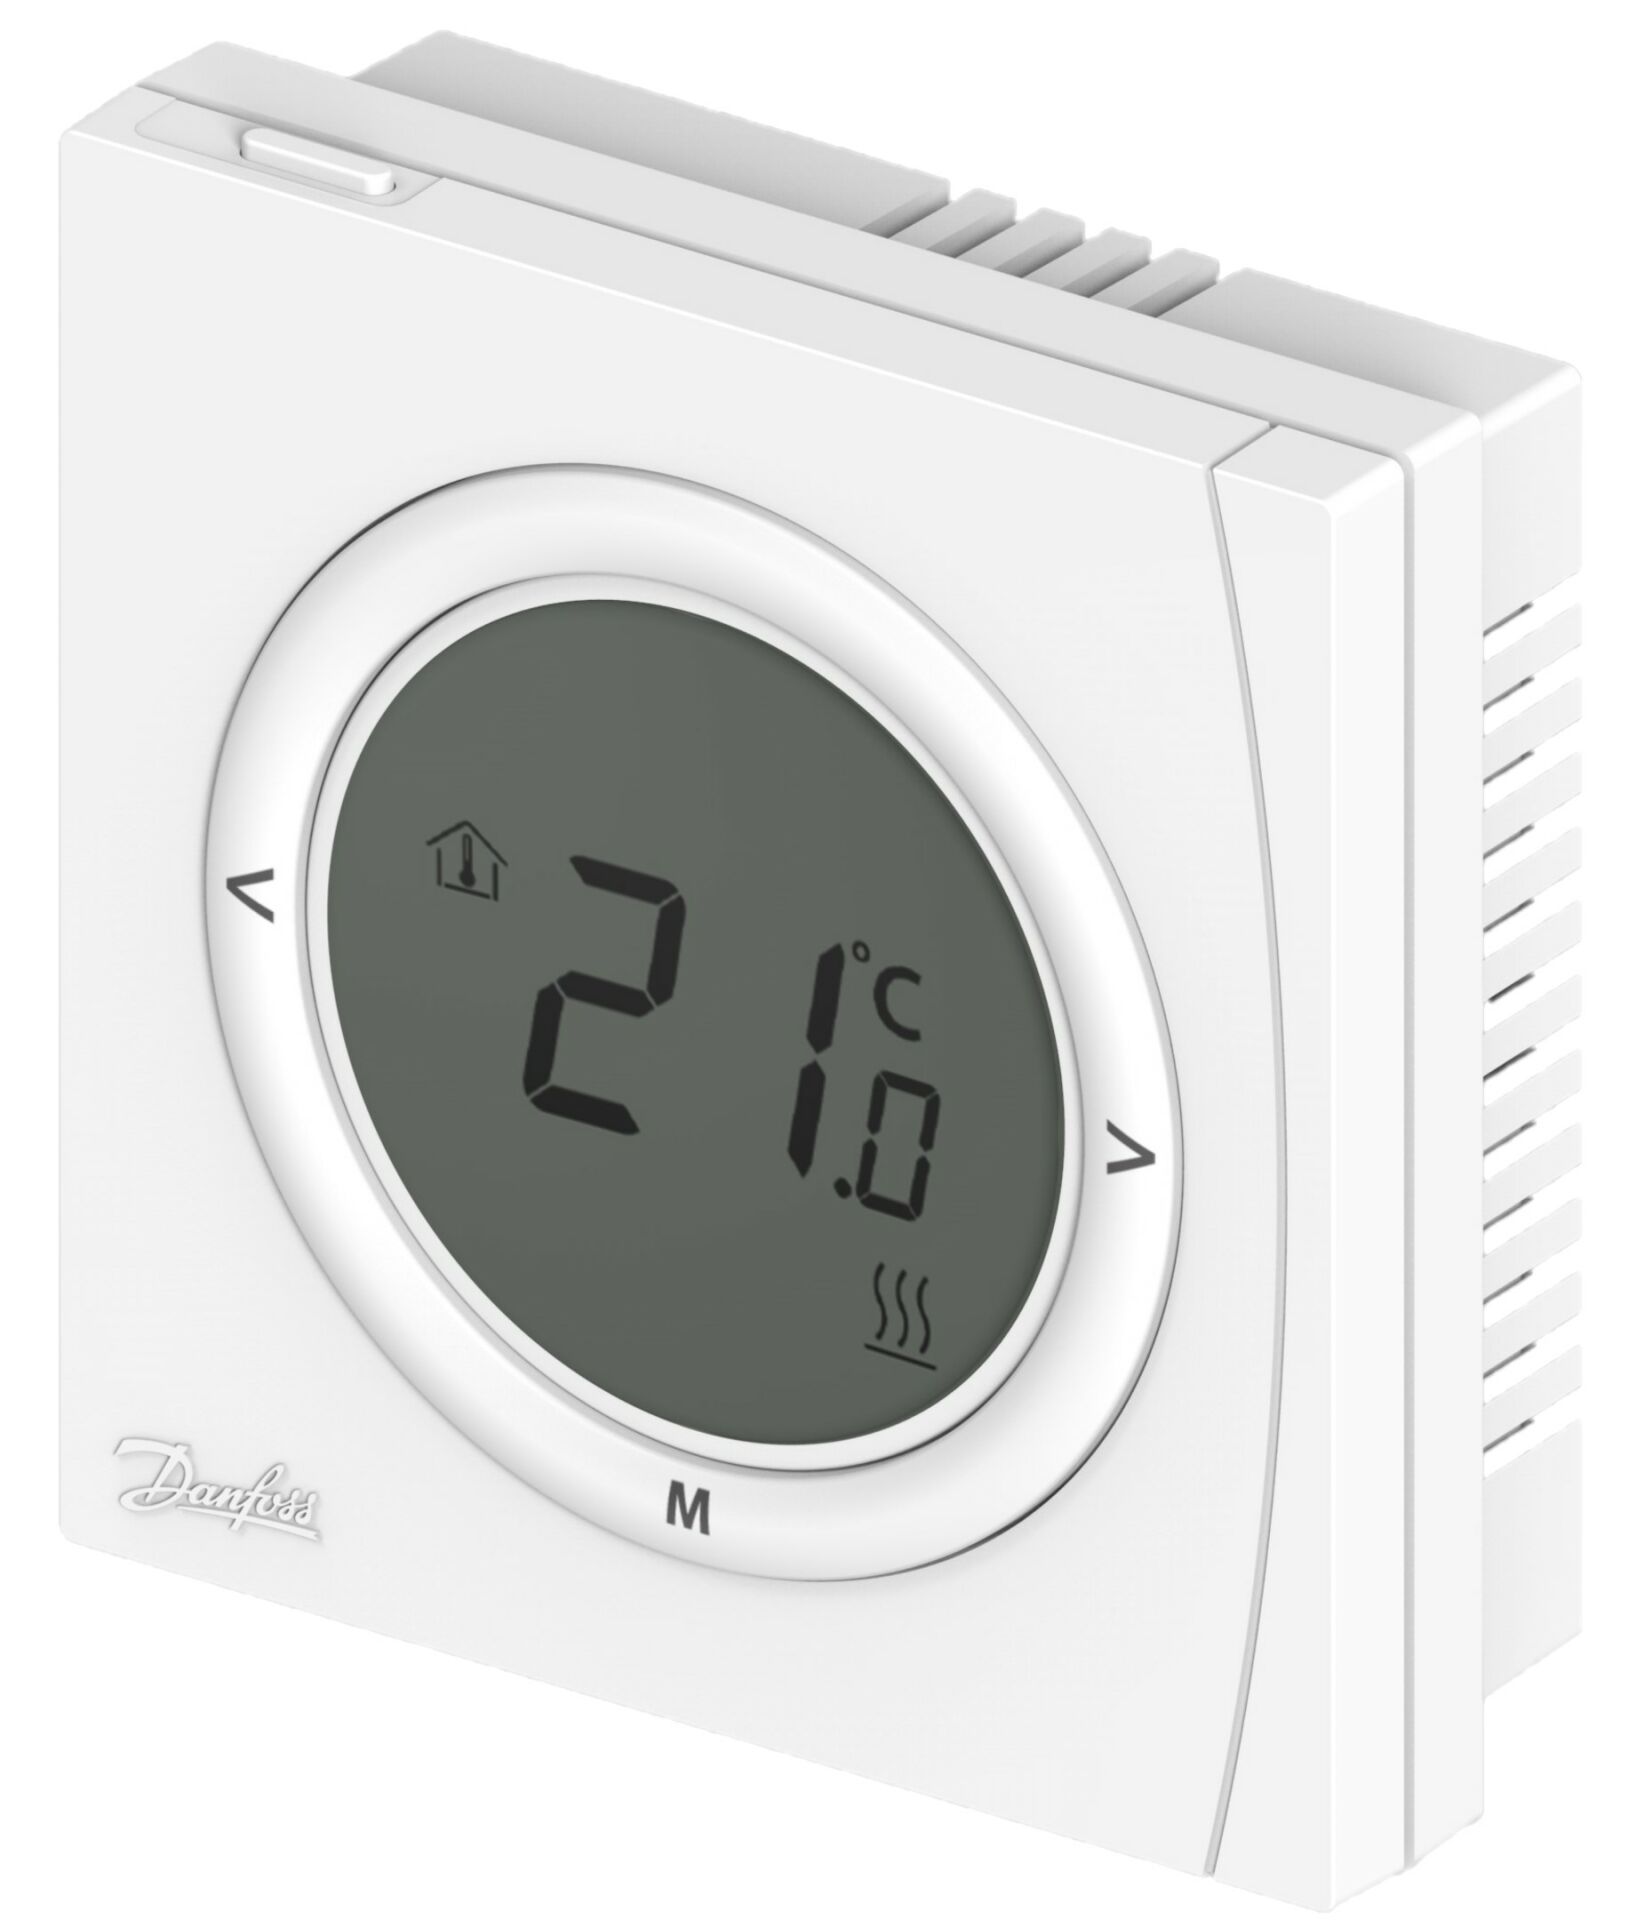 Danfoss RET 2001 B Dijital oda termostatı, 5-35 °C, Batarya beslemeli Danfoss Termostat